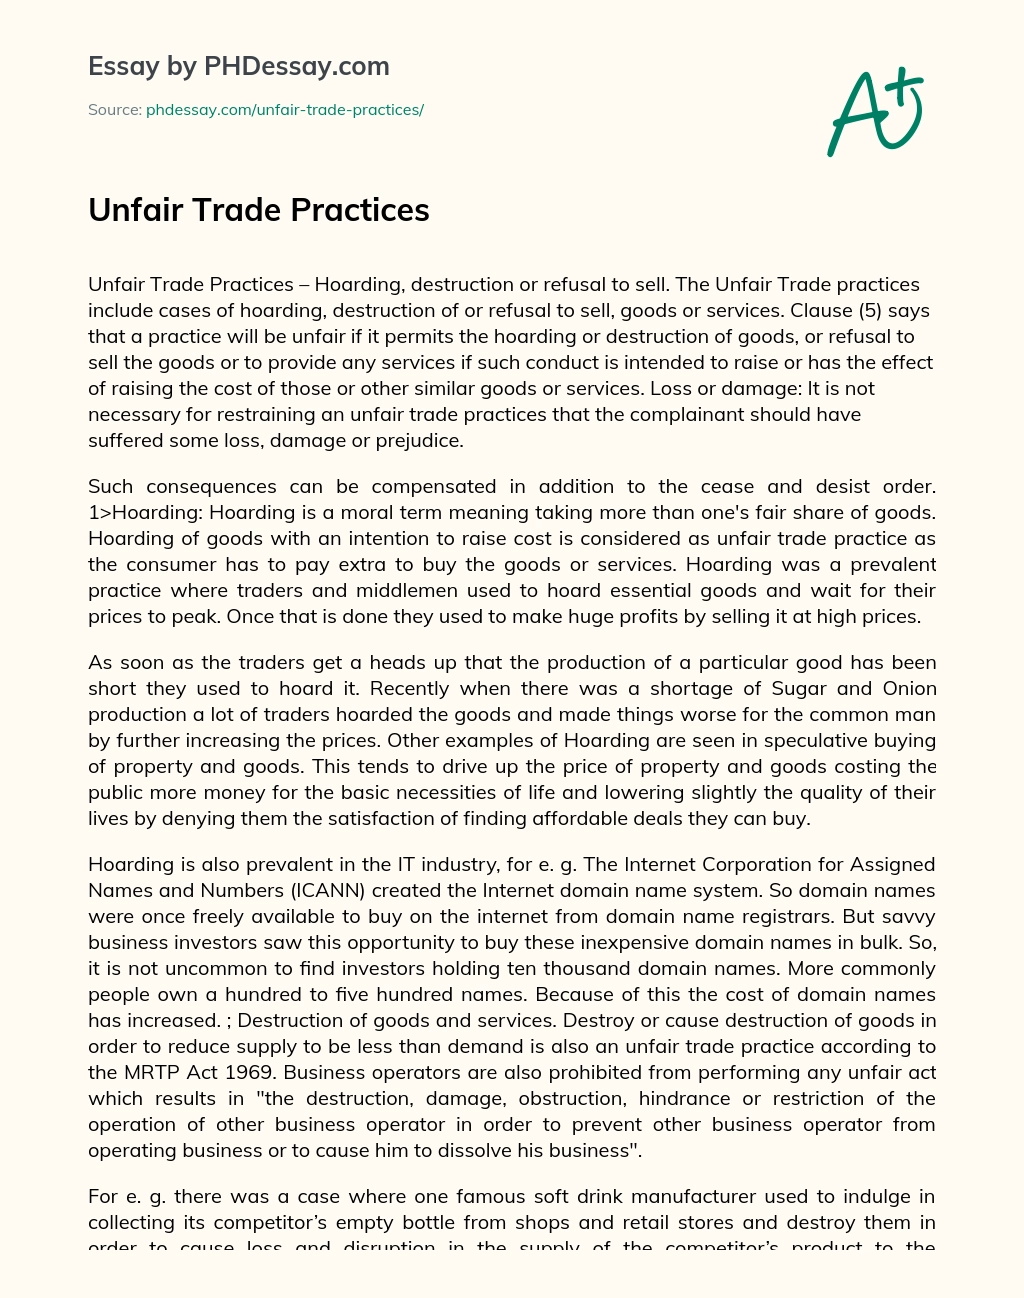 Unfair Trade Practices essay